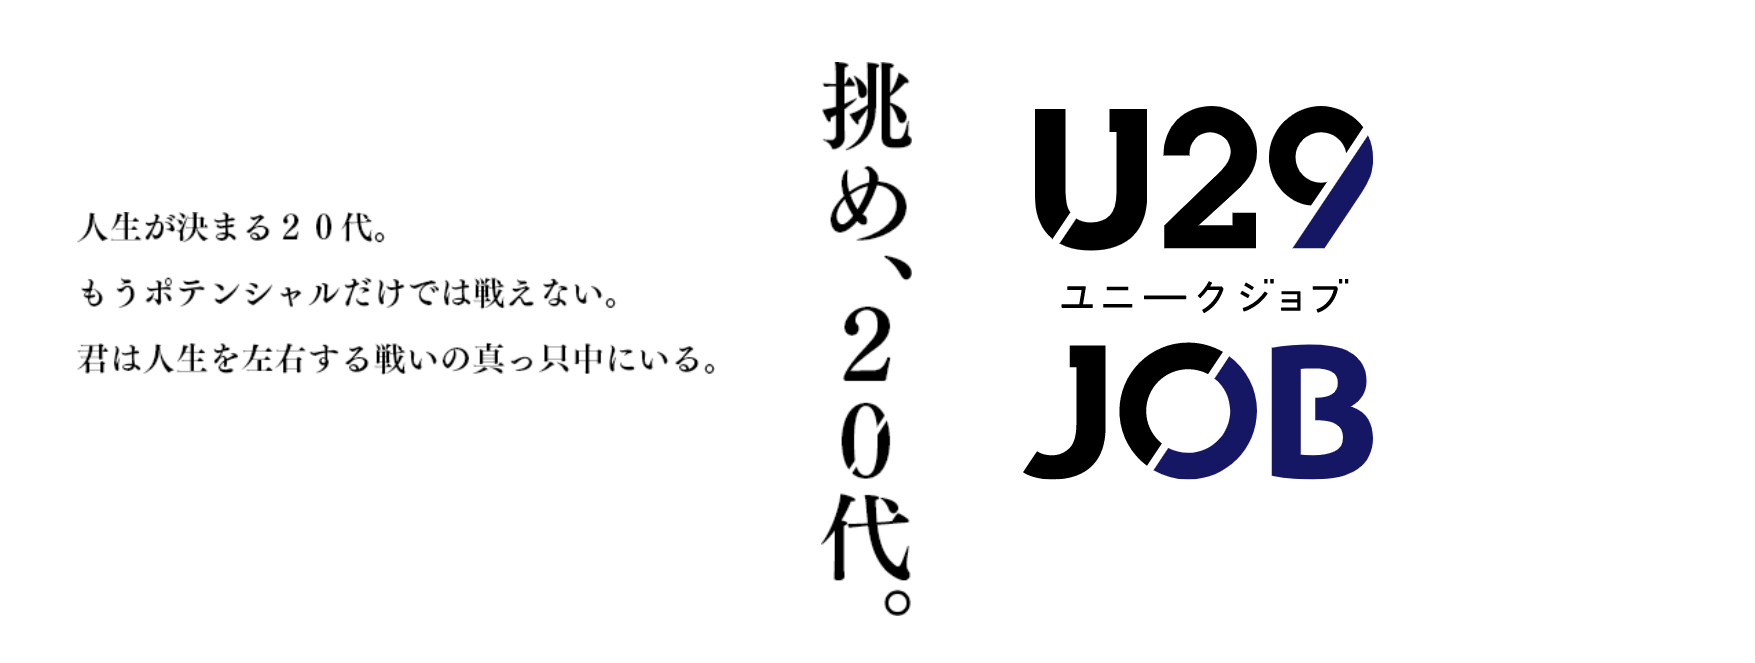 20代専門転職サイト「U29JOB」、リニューアルでサイトスローガンなどを変更